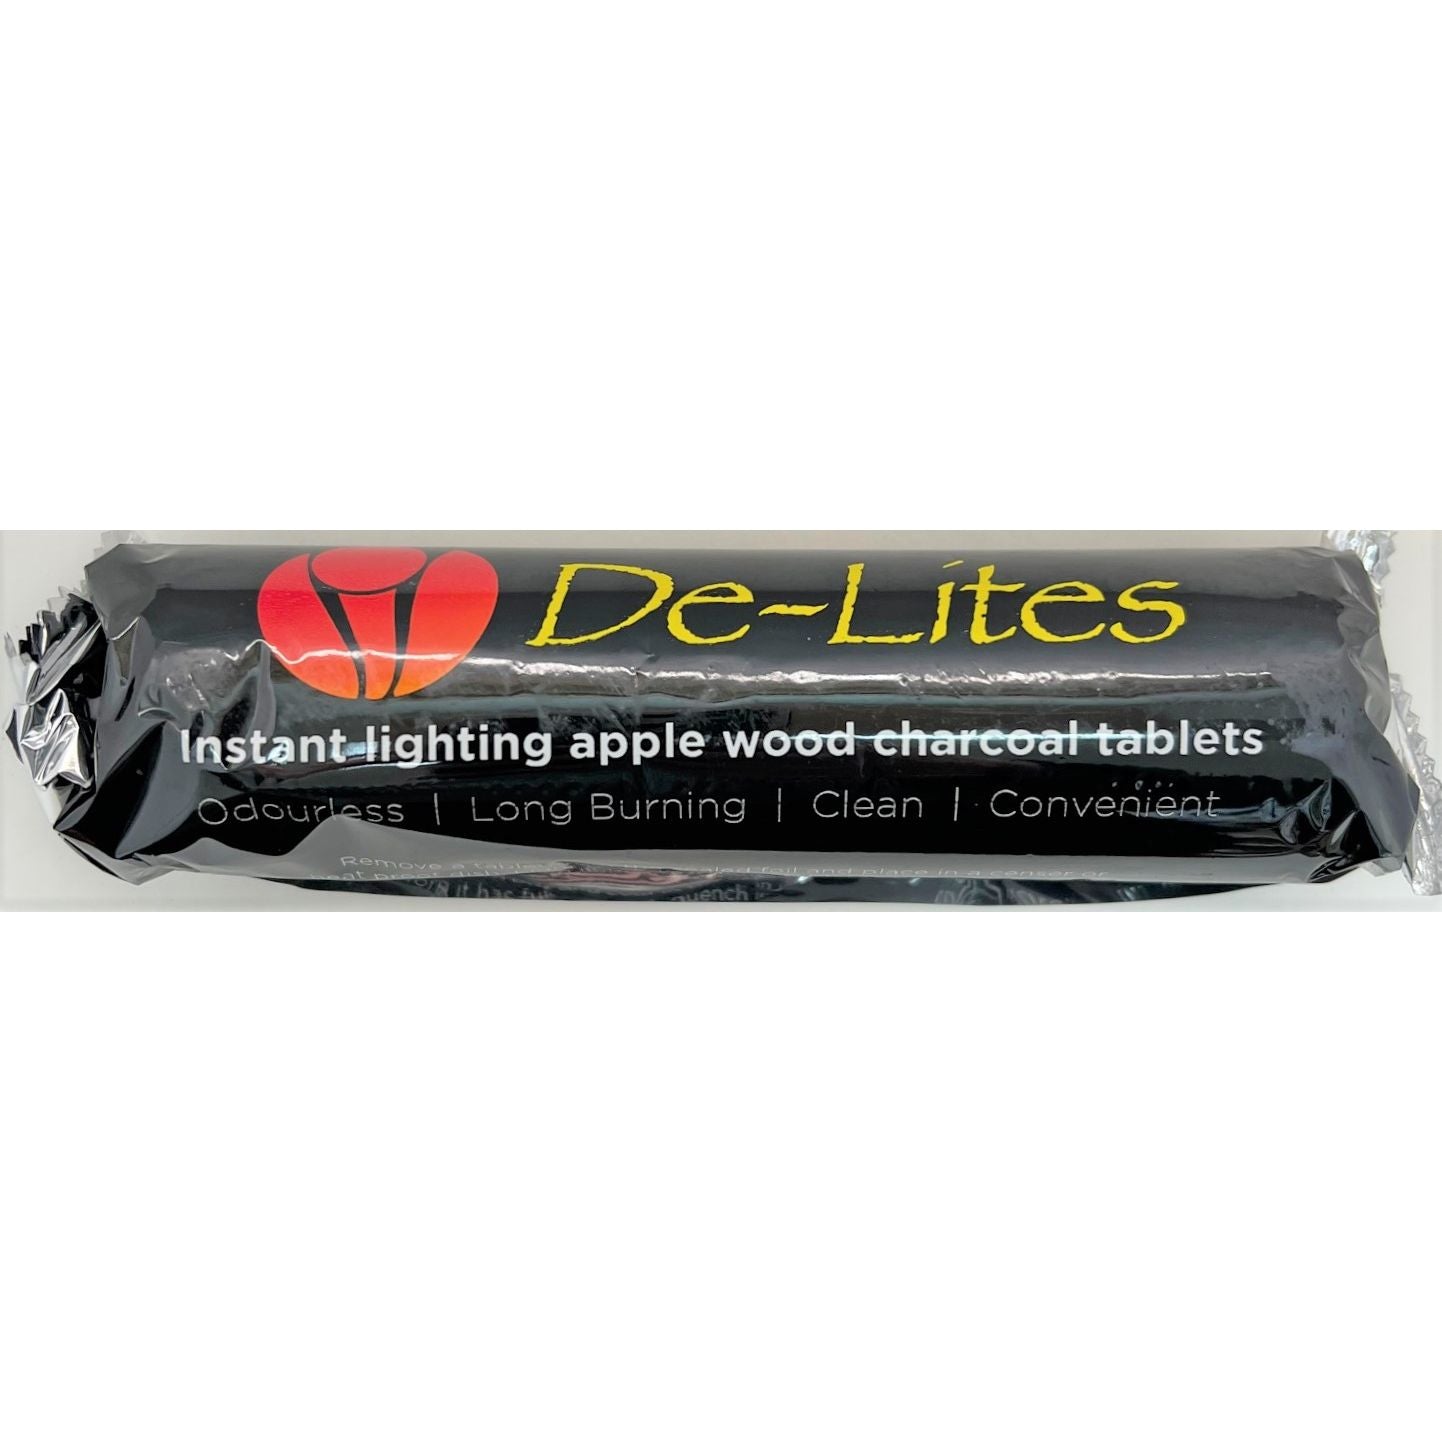 De-Lites Charcoal - Large, 10 Rolls of 10 Tablets